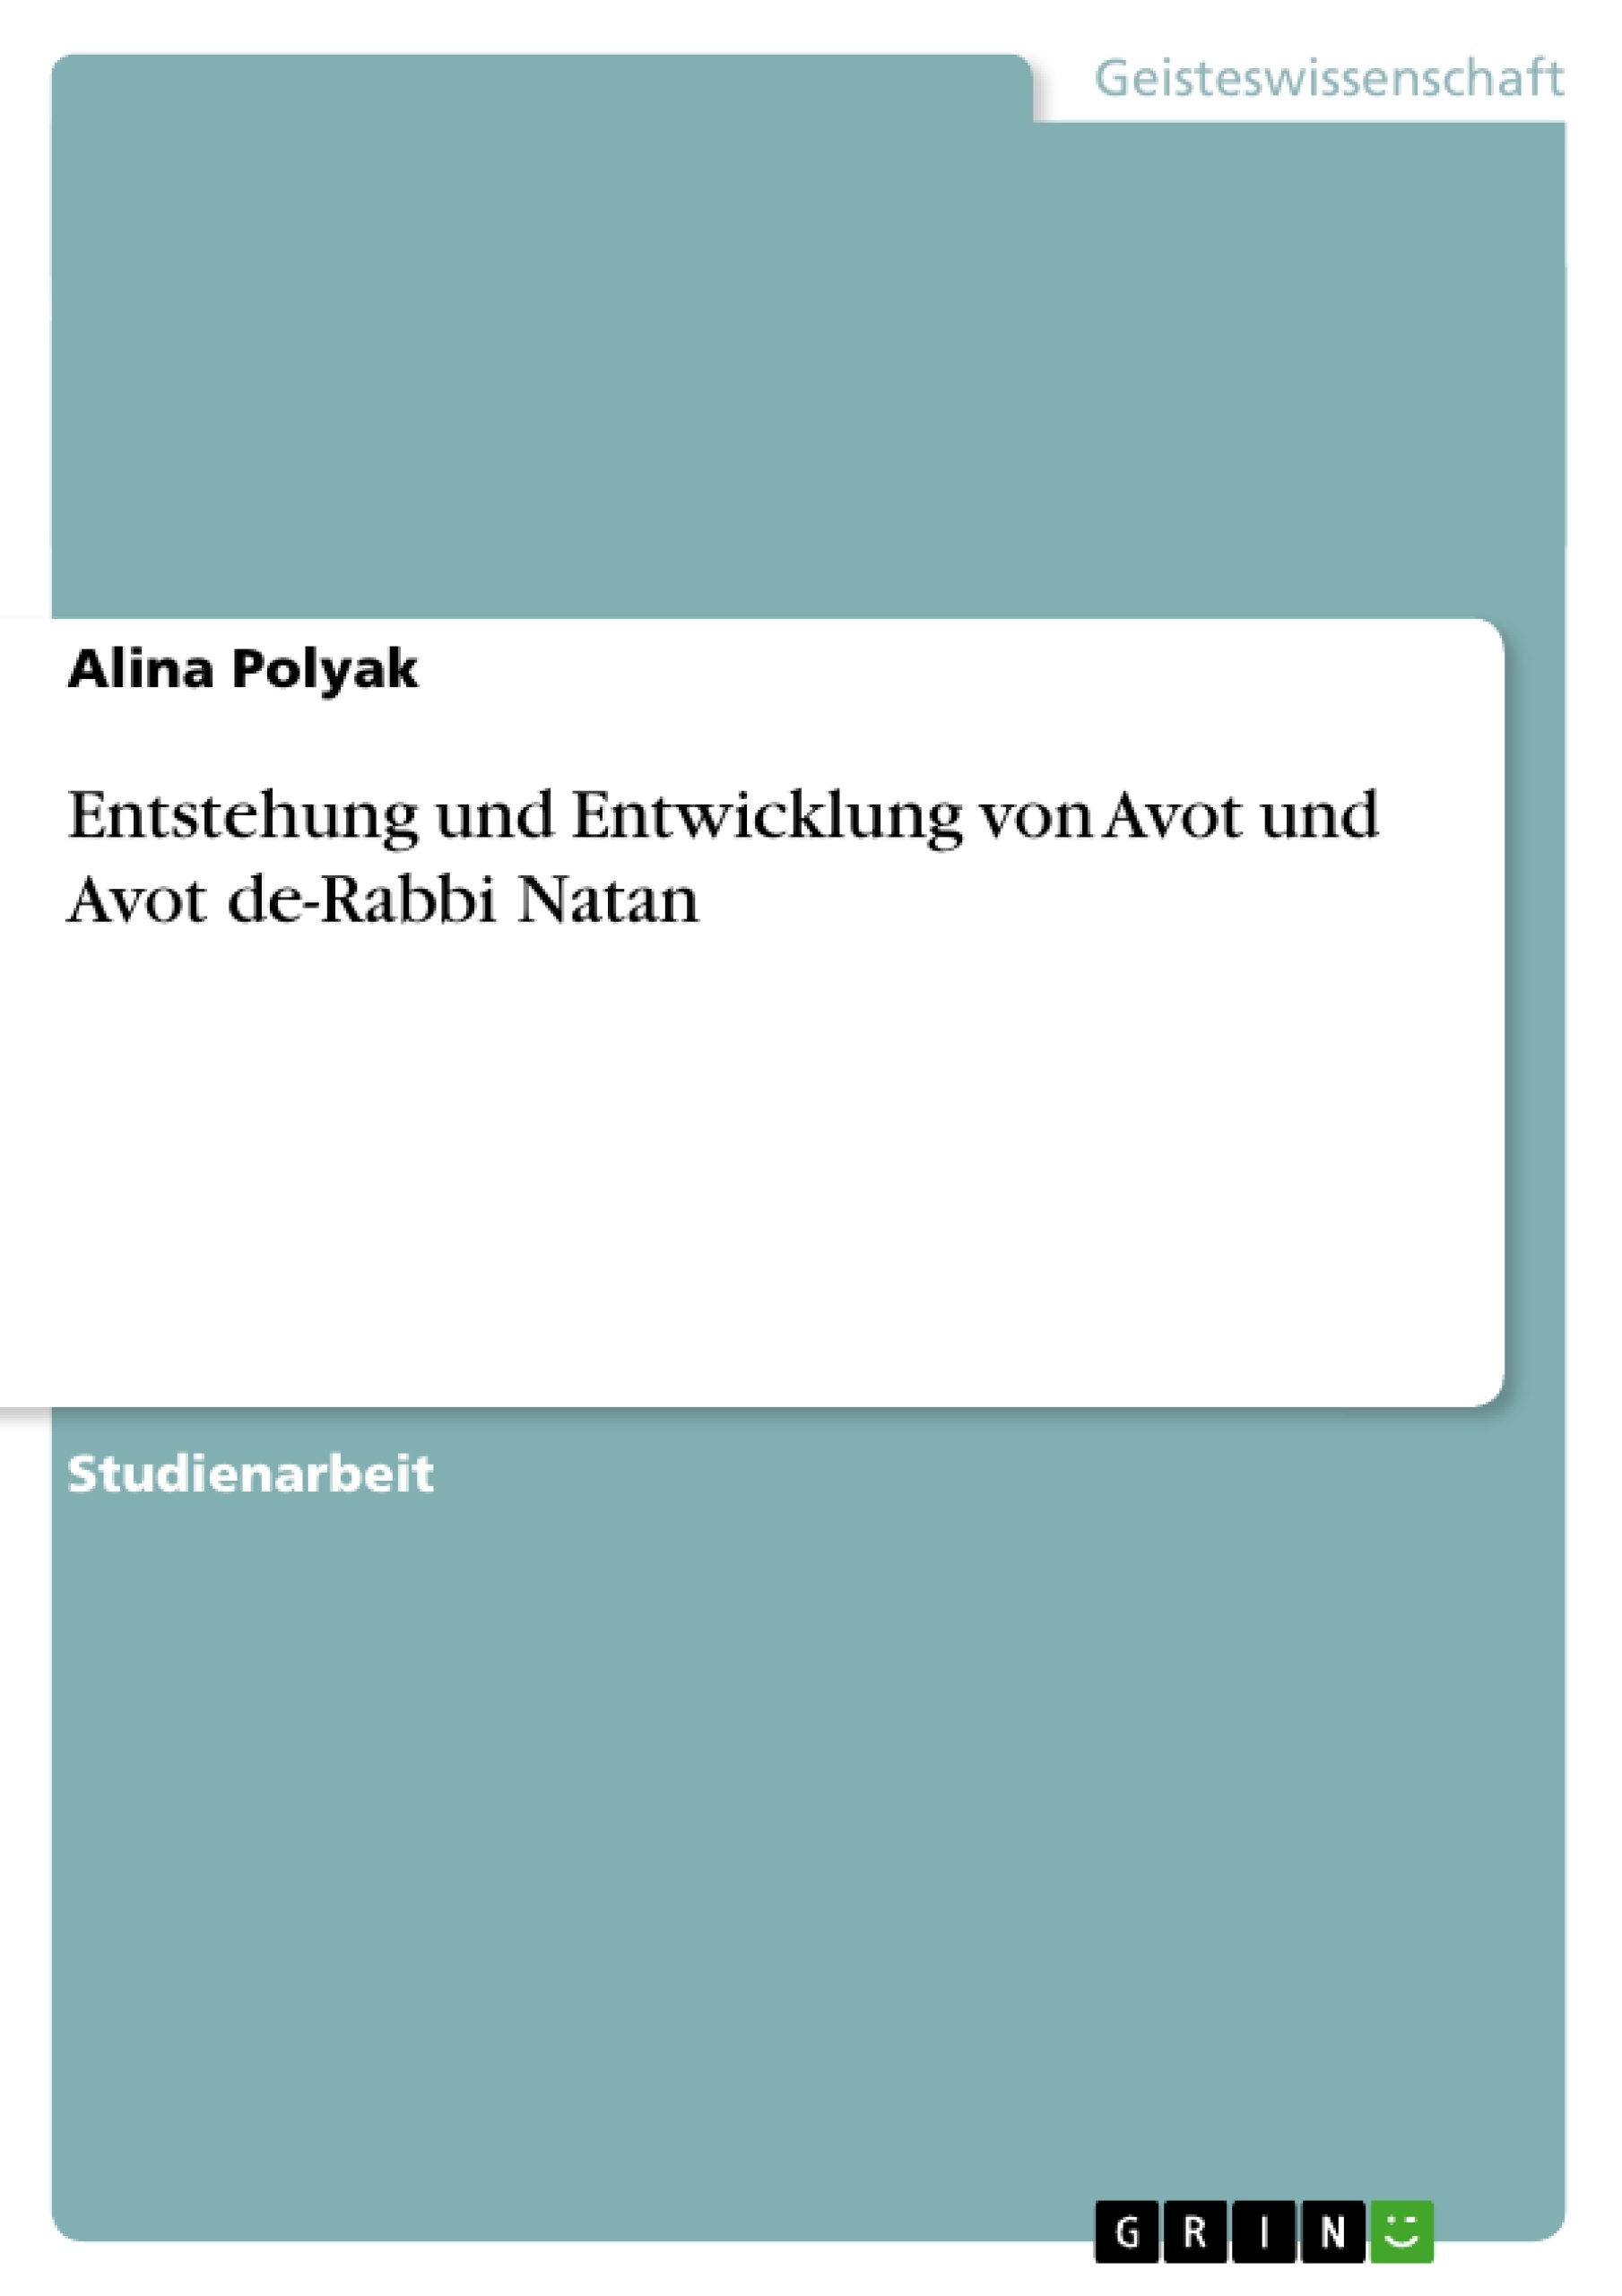 Título: Entstehung und Entwicklung von Avot und Avot de-Rabbi Natan